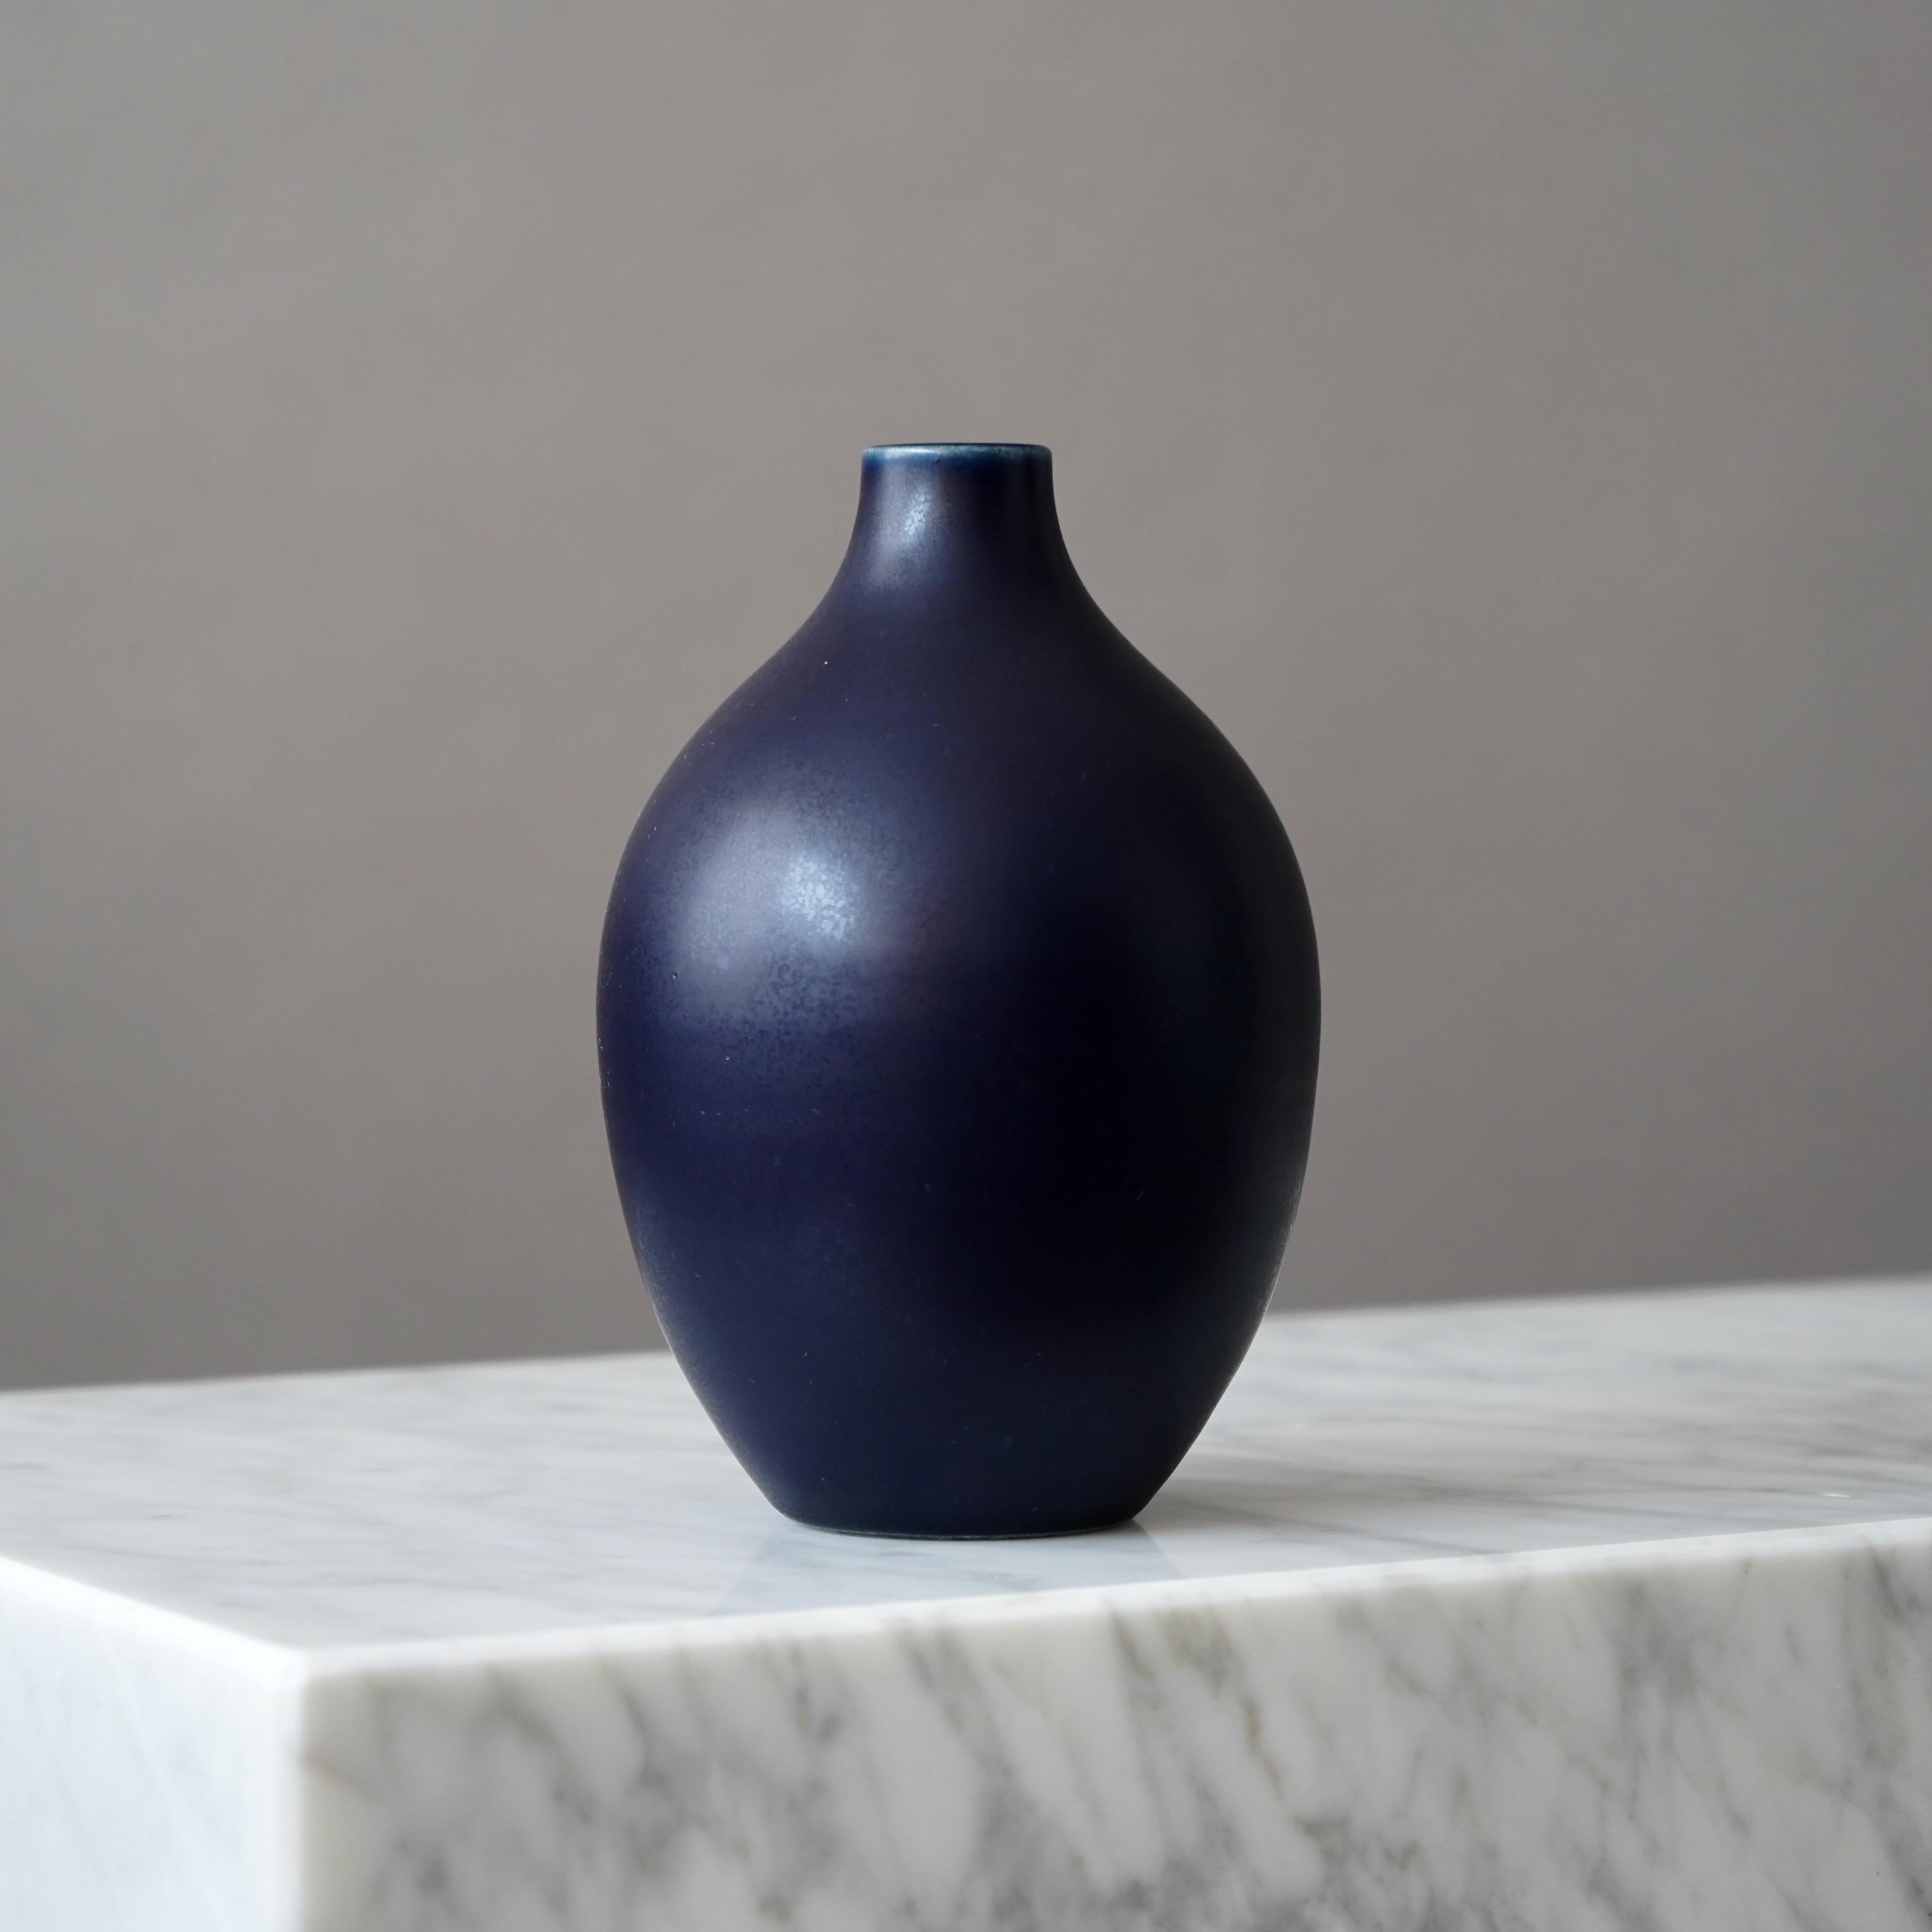 Wunderschöne Vase aus Steingut, hergestellt von den Keramikmeistern Erich und Ingrid Triller.
Dieses Stück wurde in ihrer Werkstatt in Tobo, Schweden, in den 1950er Jahren hergestellt.

Sehr guter Zustand, mit einem kleinen weißen Punkt in der